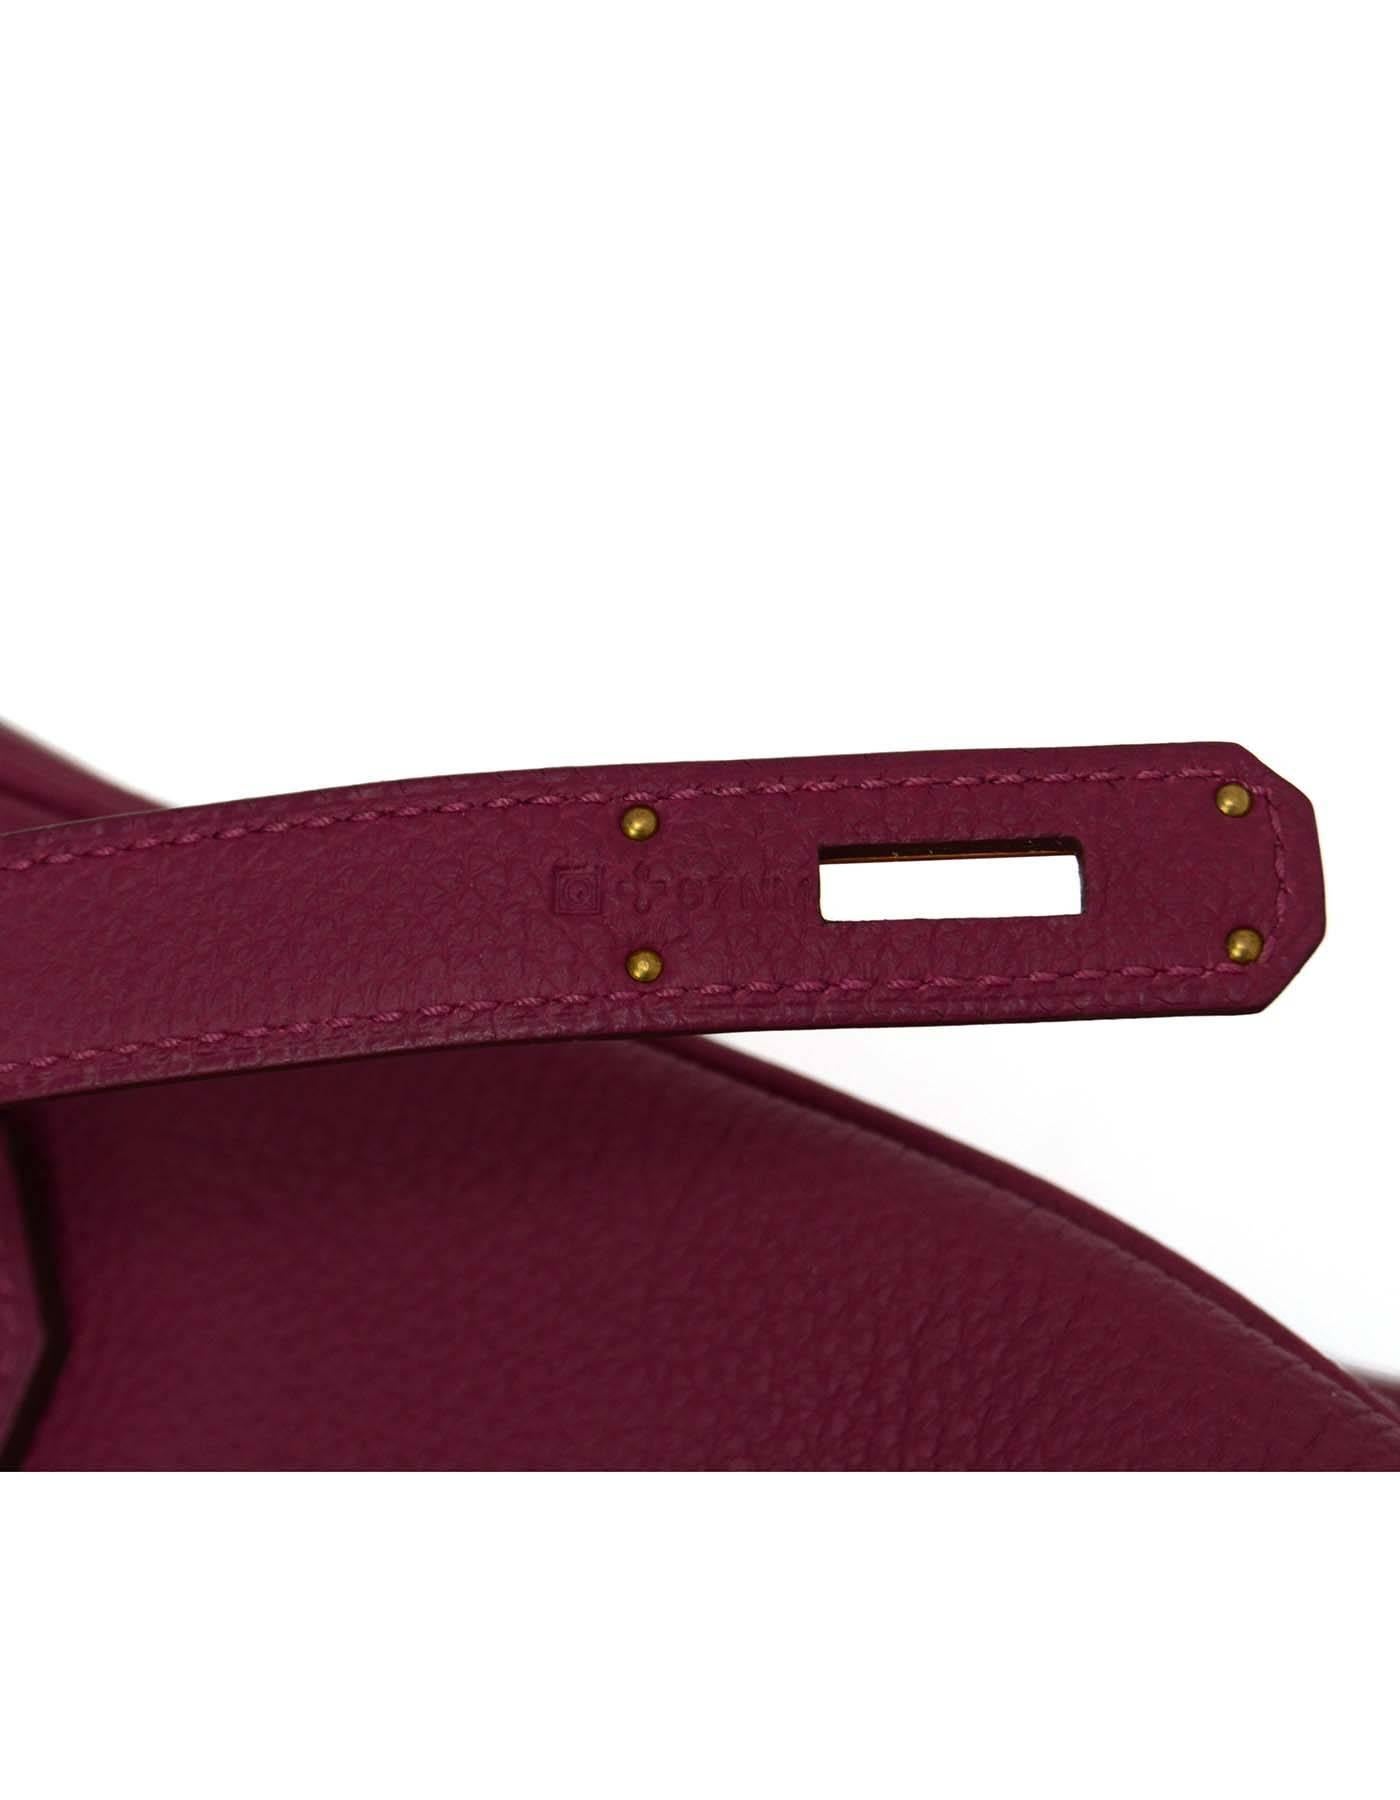 Hermes LIKE NEW Violet Tosca Togo Leather 35cm Birkin Bag w/ Box 2